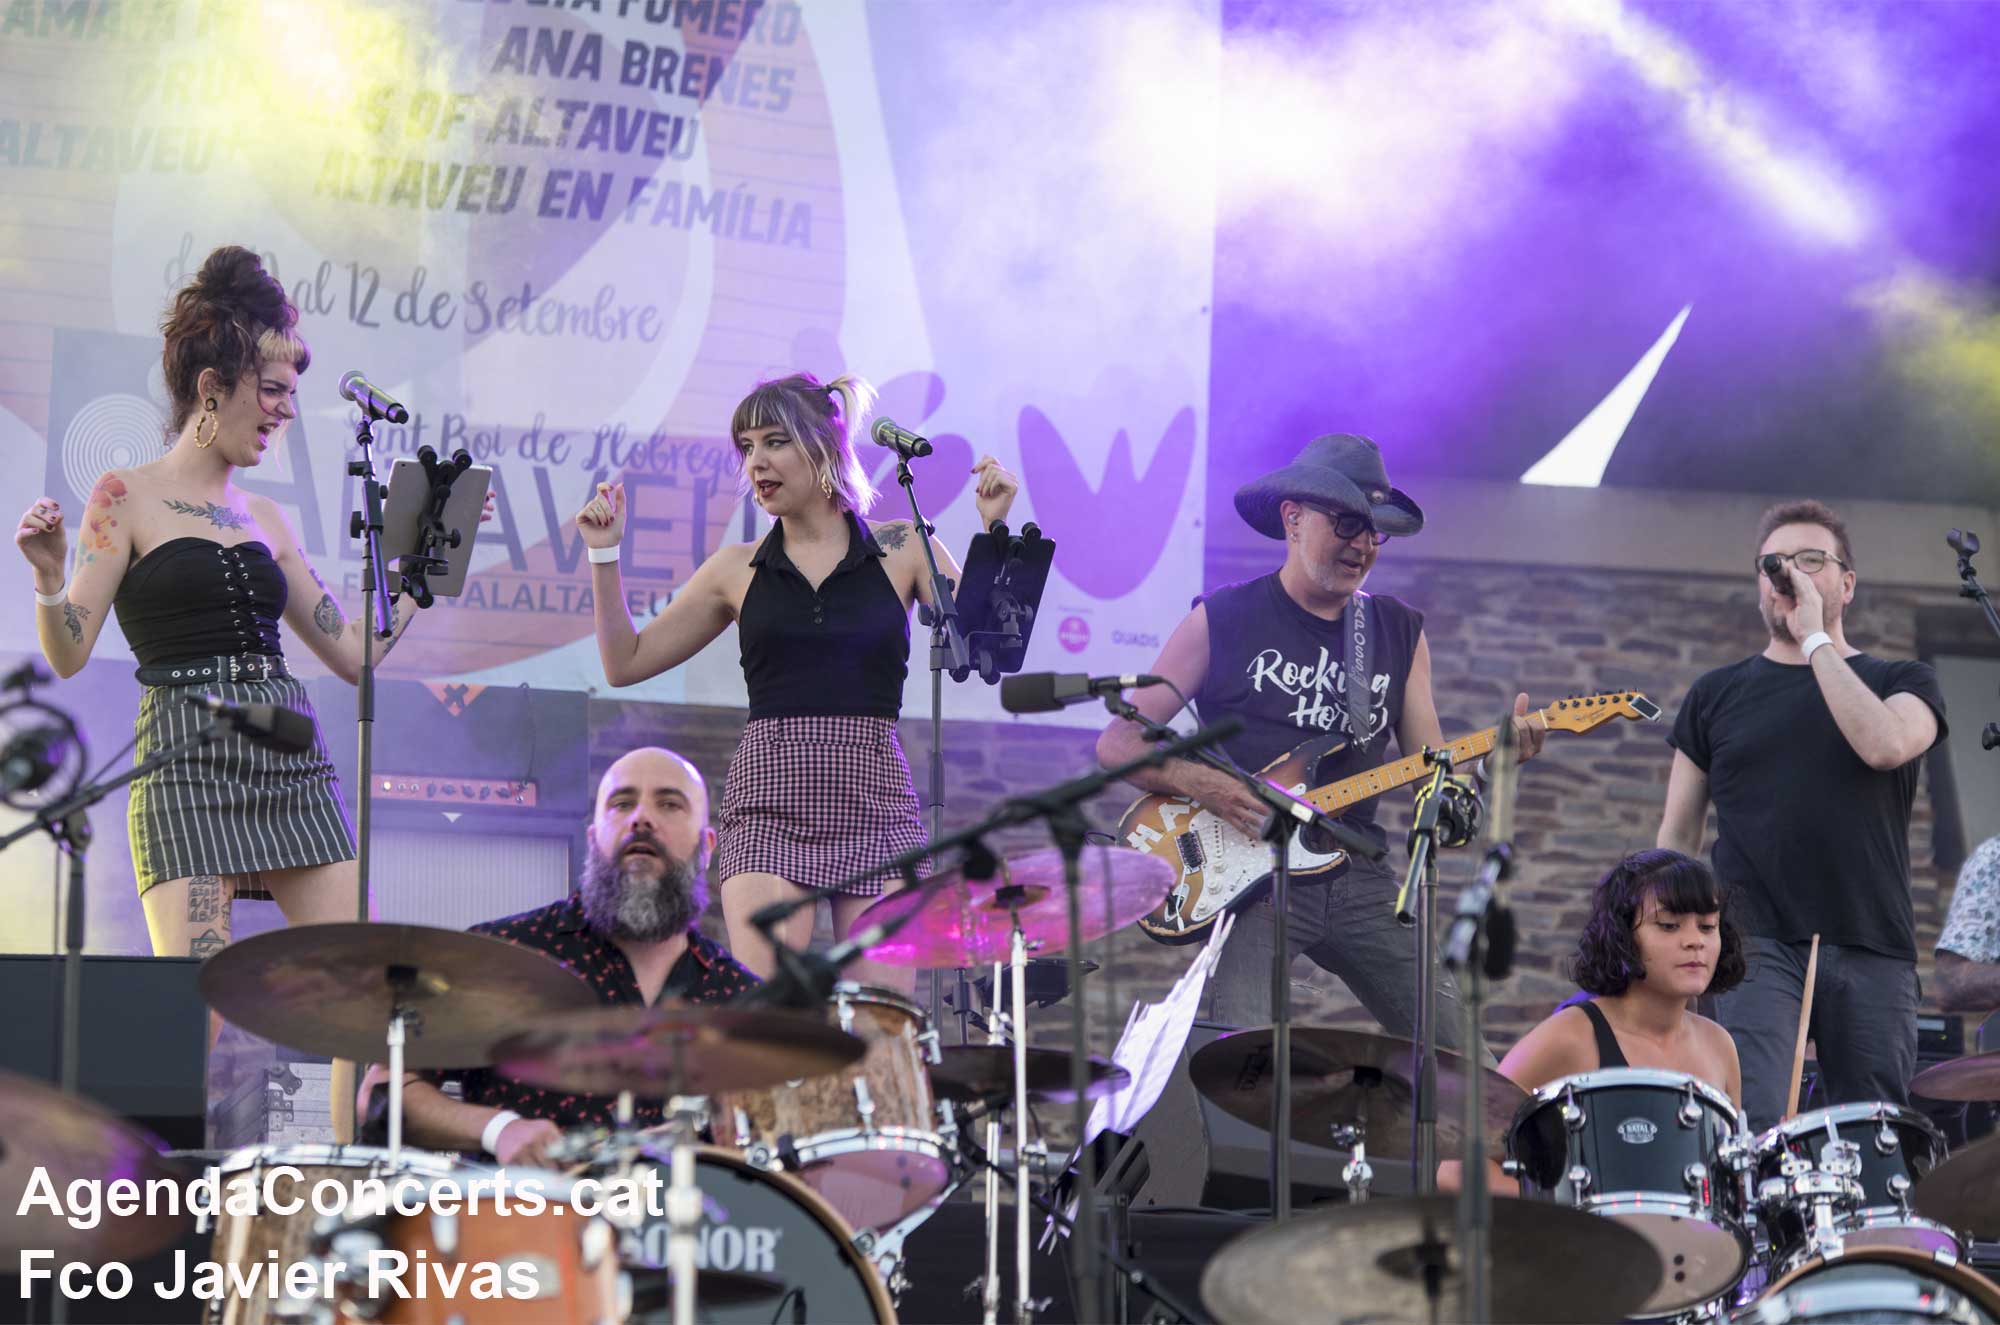 Drummers of Altaveu, espectacle propi del Festival Altaveu 2021.